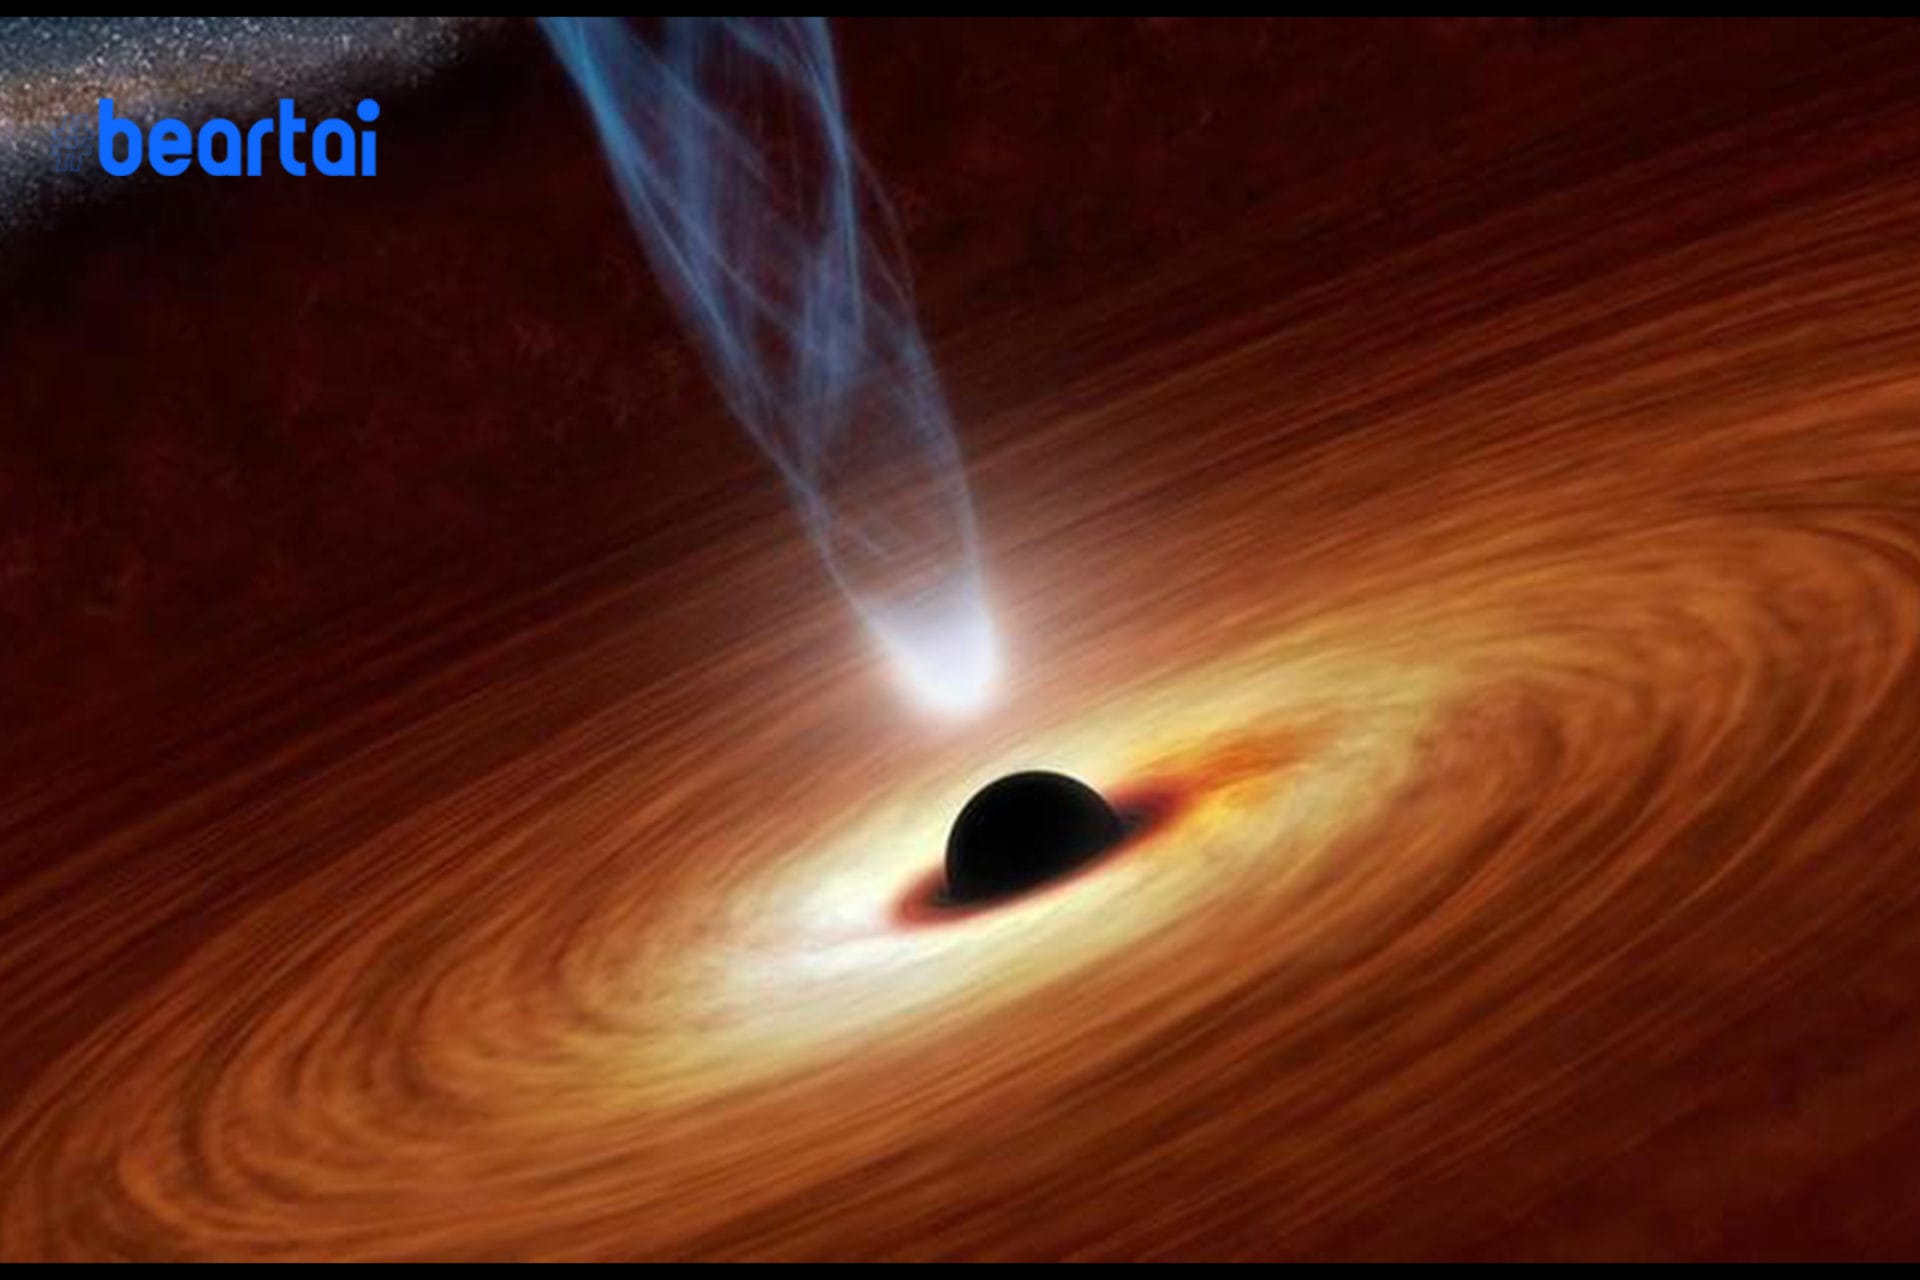 ราหูยังต้องหลบ เมื่อนักวิจัยพบหลุมดำยักษ์กลืนกินดวงอาทิตย์ถึงวันละหนึ่งดวง!